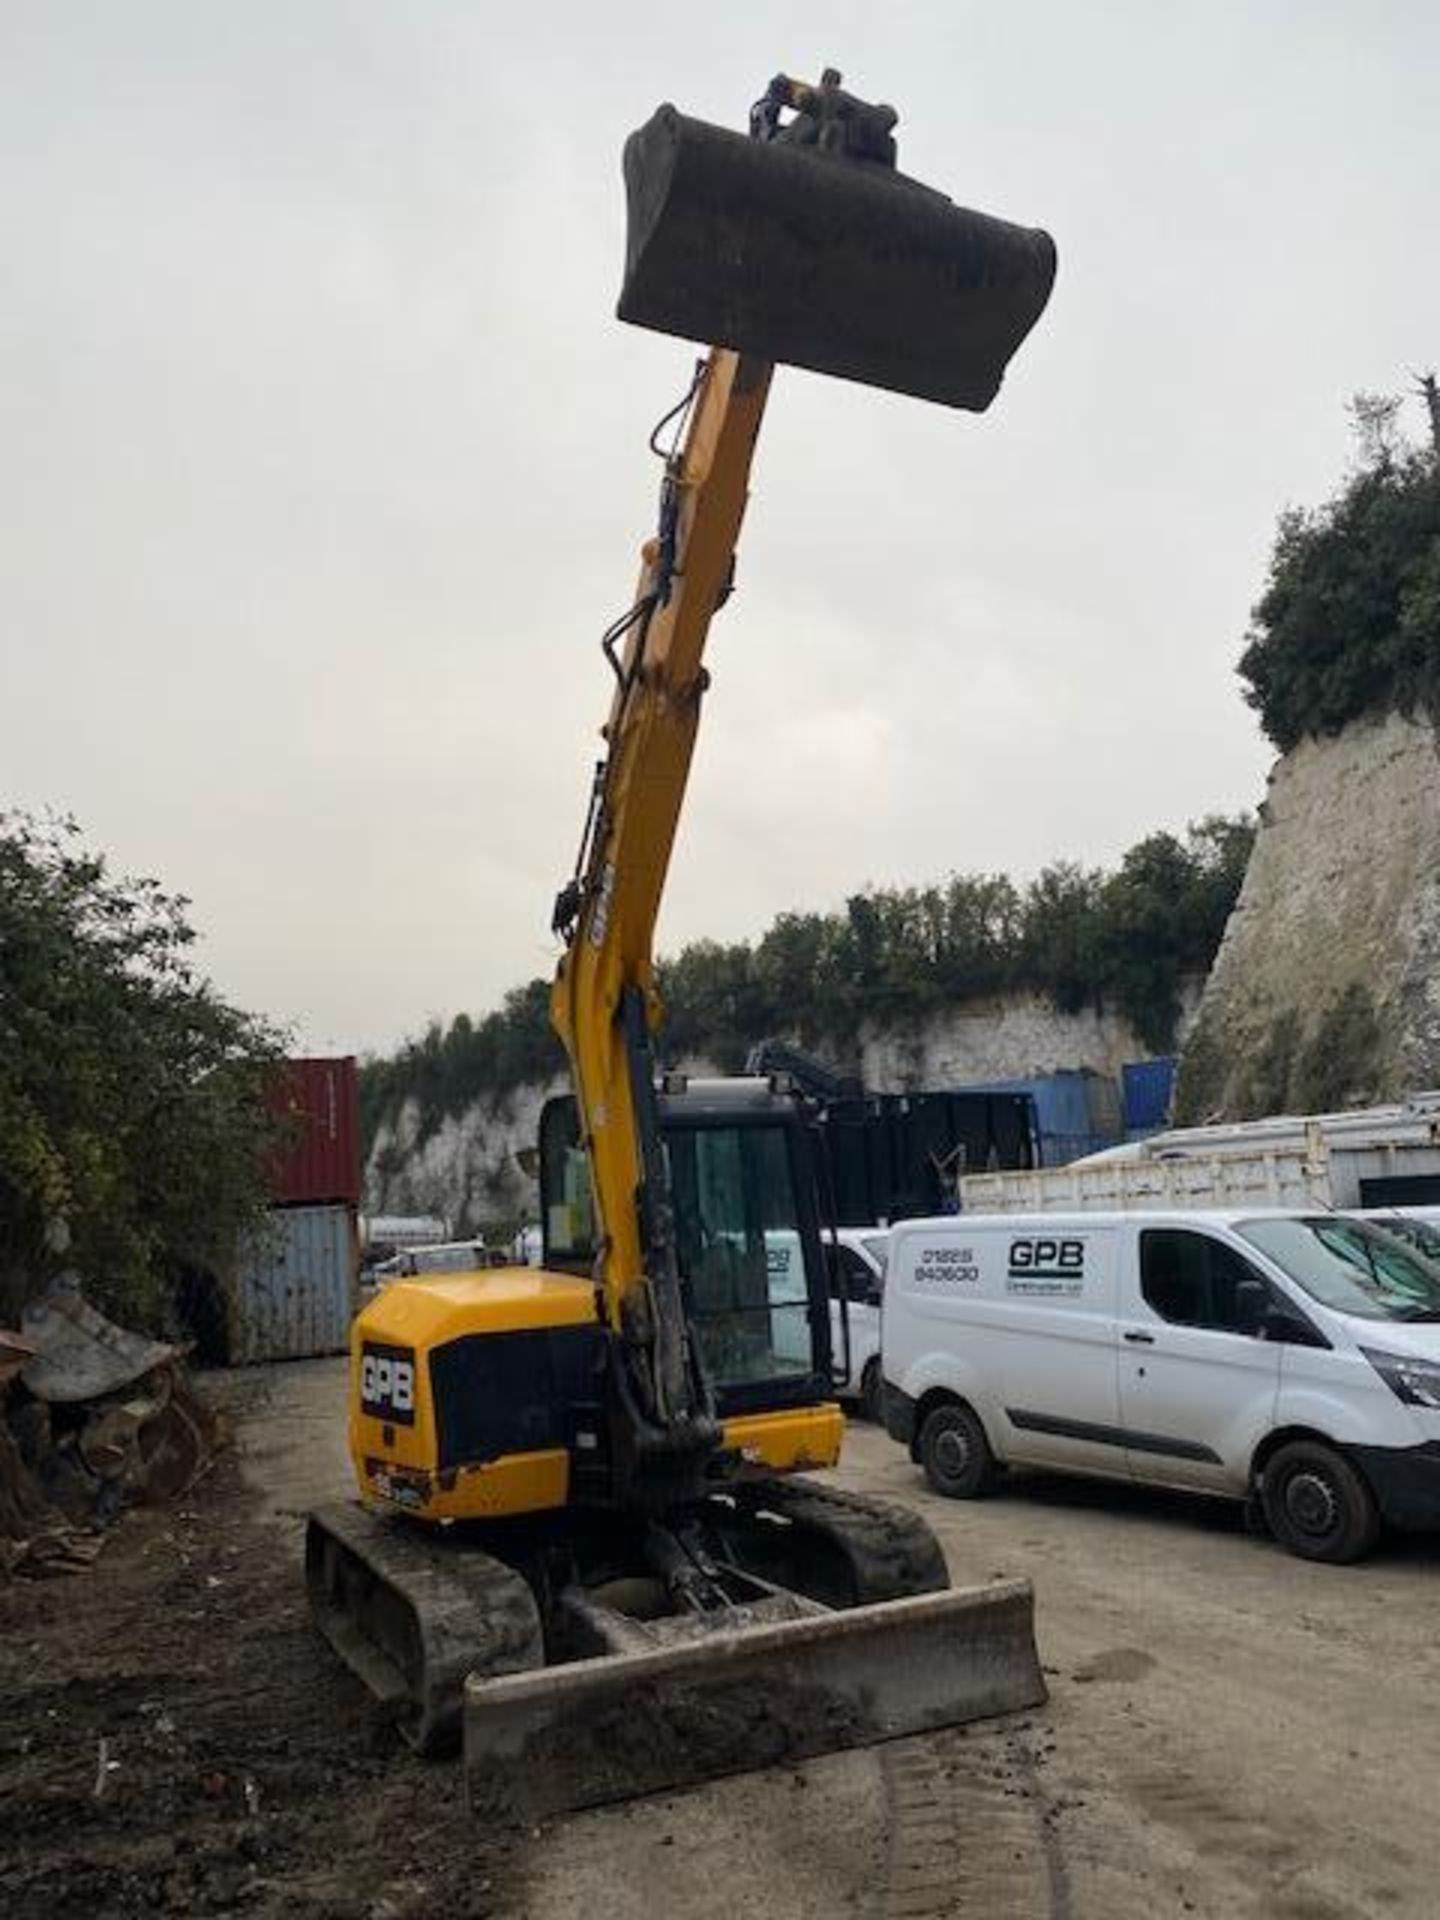 JCB JCB85Z1 8 ton excavator (E16) (2015) - Image 2 of 16